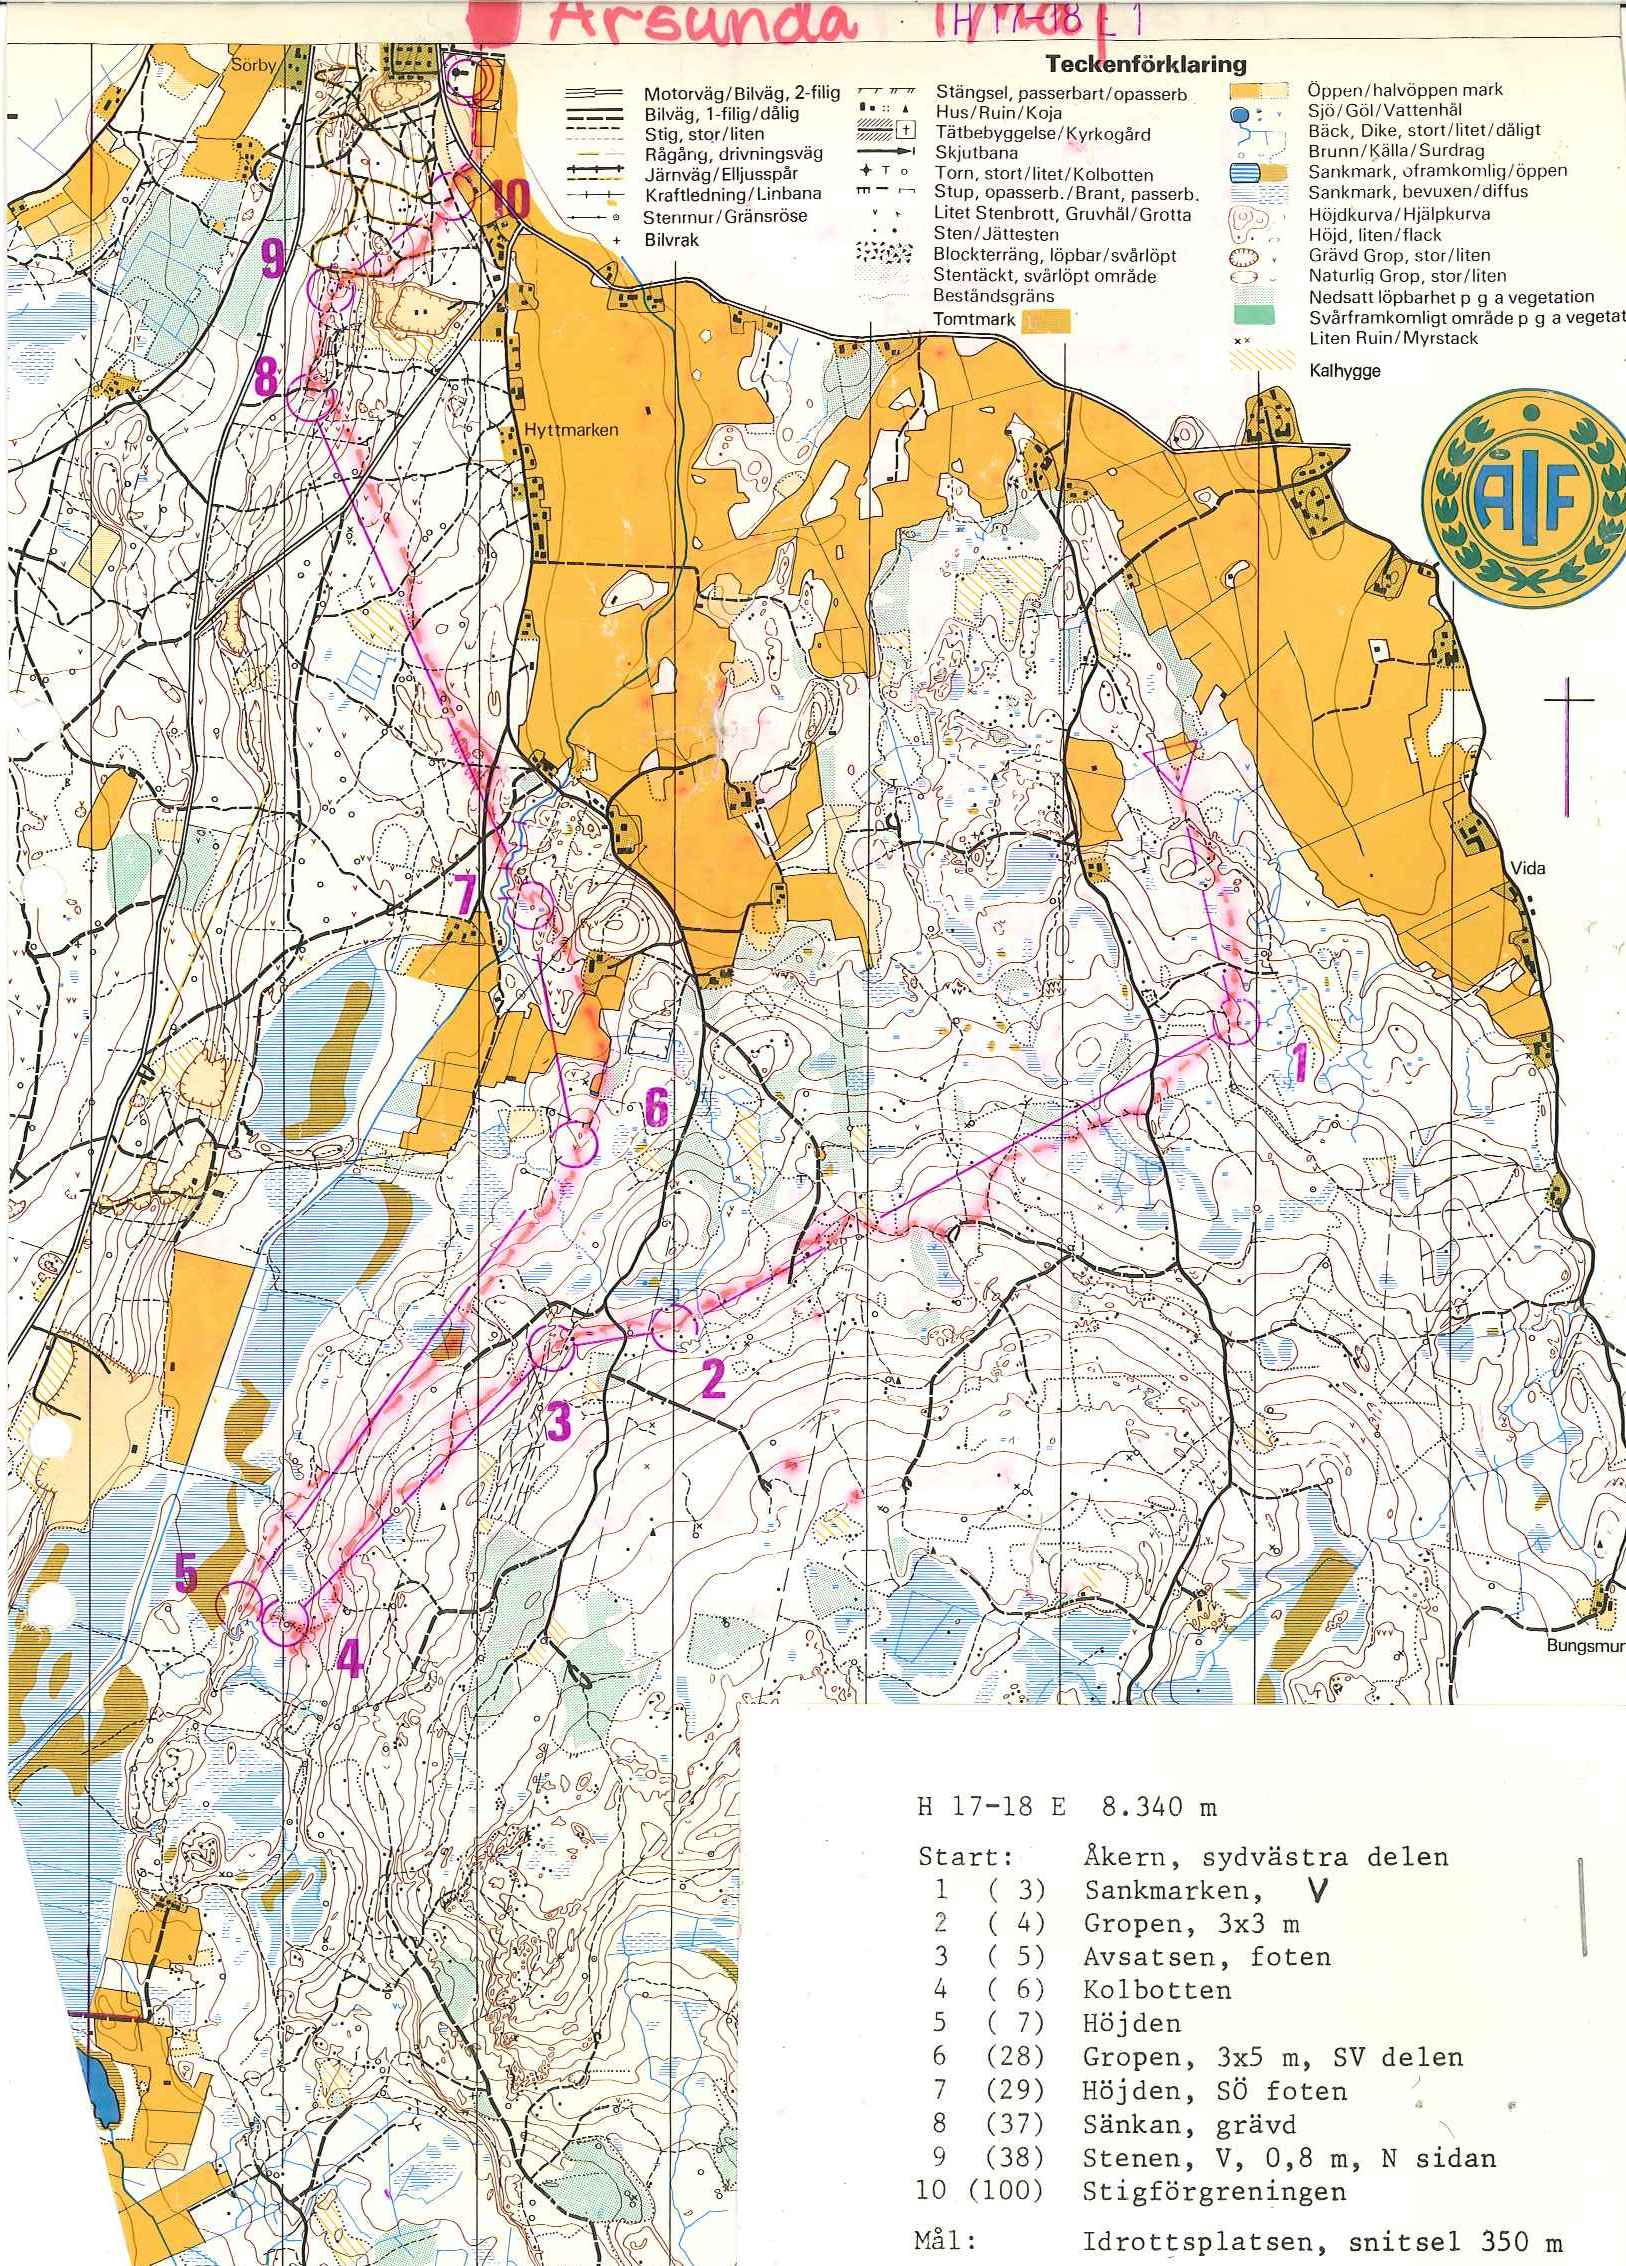 Årsunda (01/05/1978)